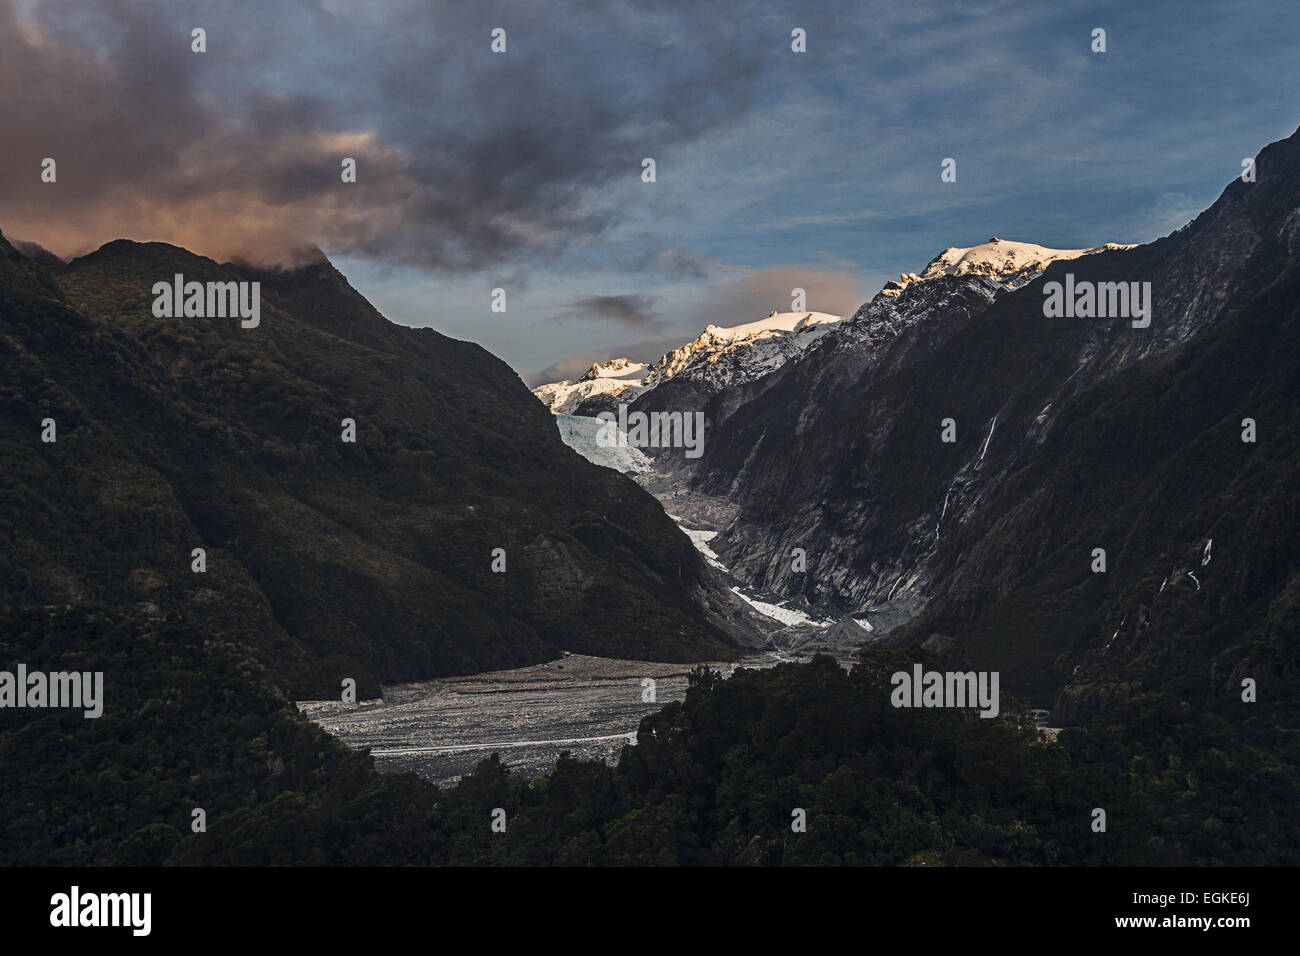 Franz Josef Glacier, South Island, New Zealand Stock Photo